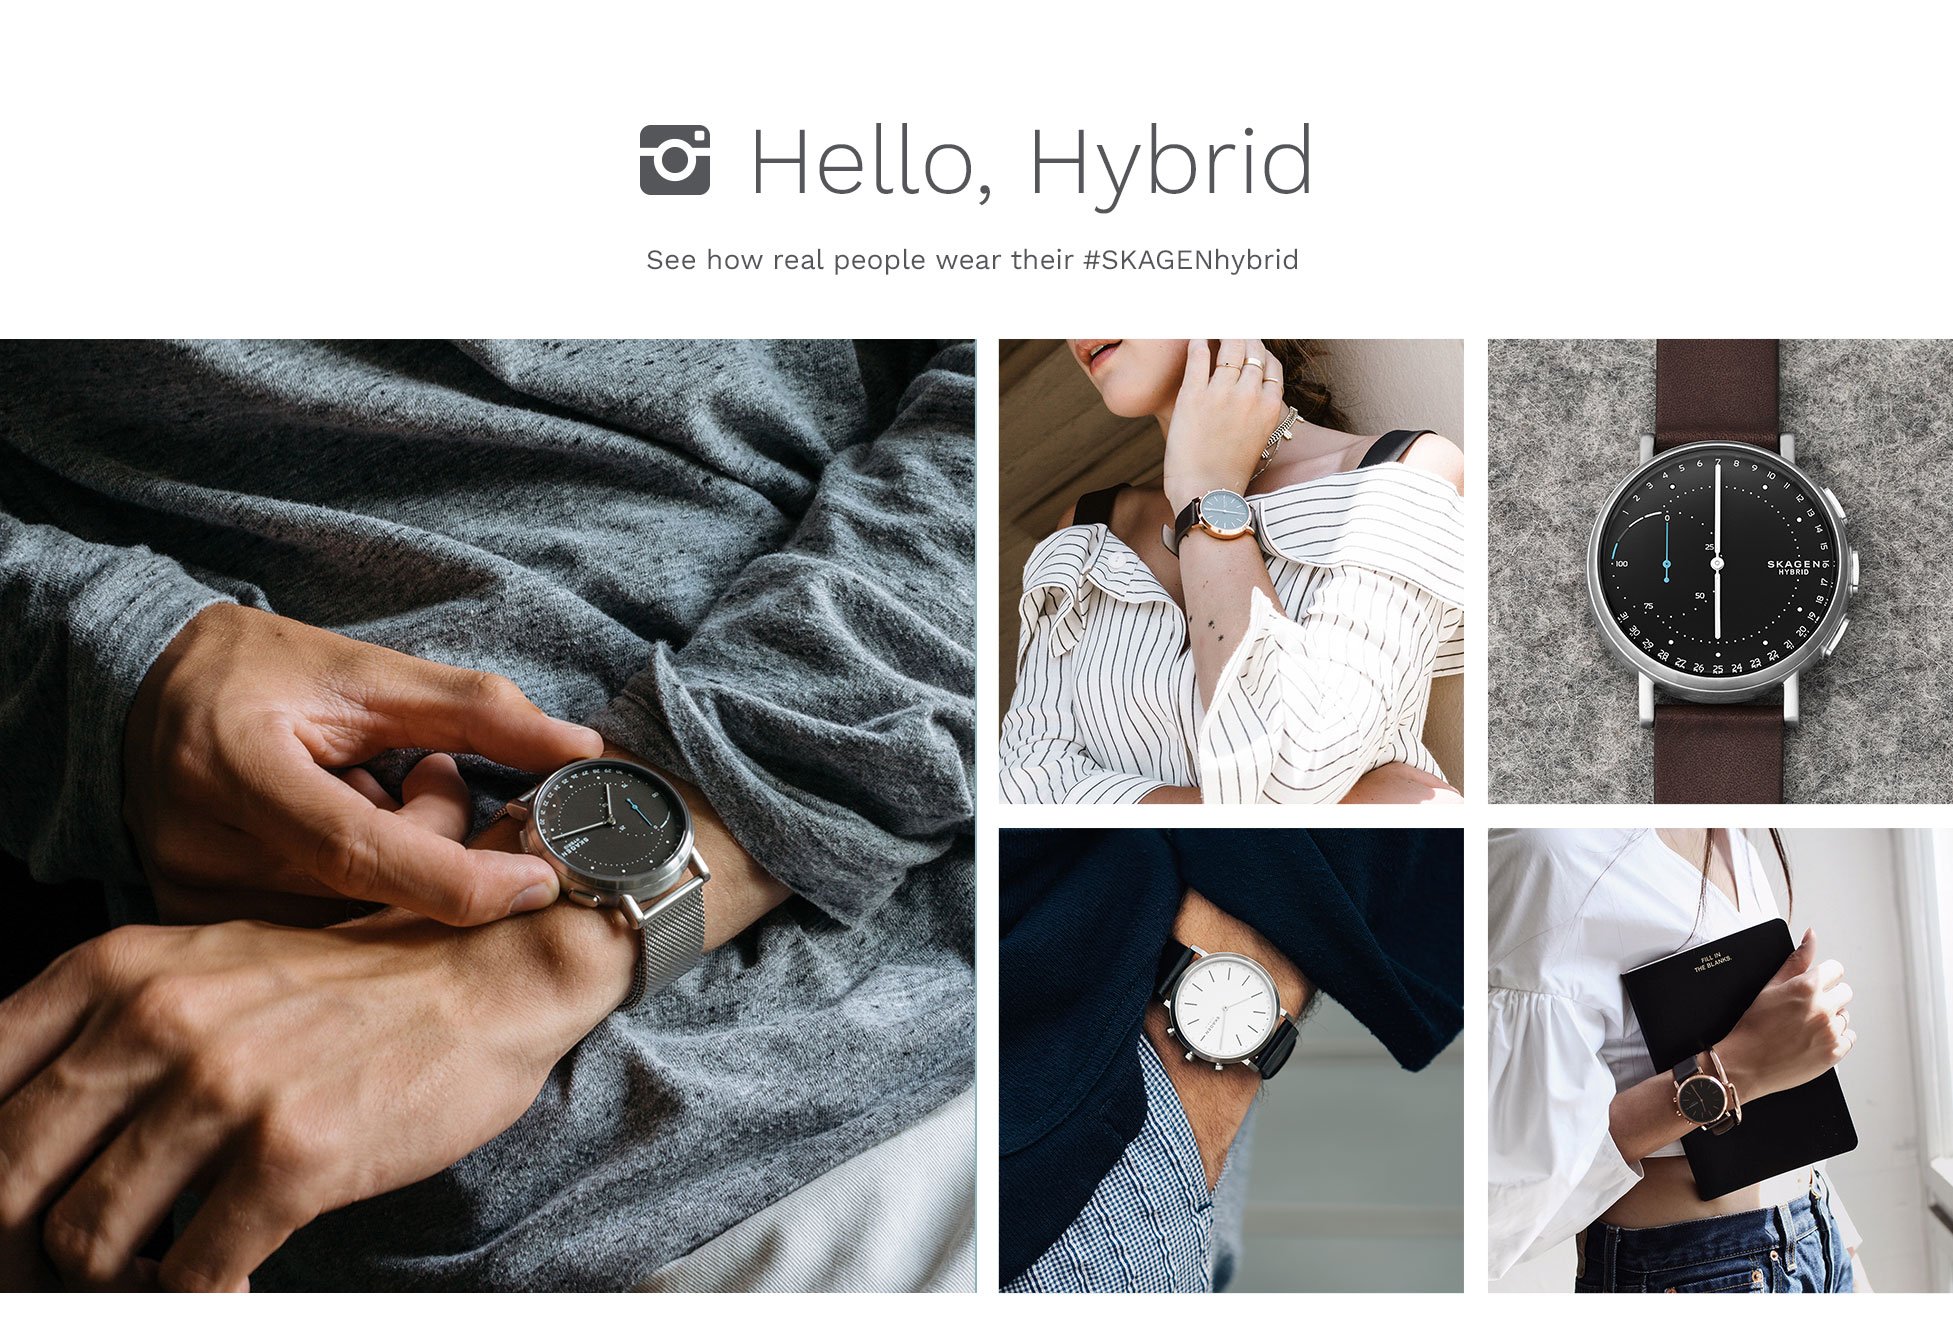 skagen hybrid smartwatch instagram